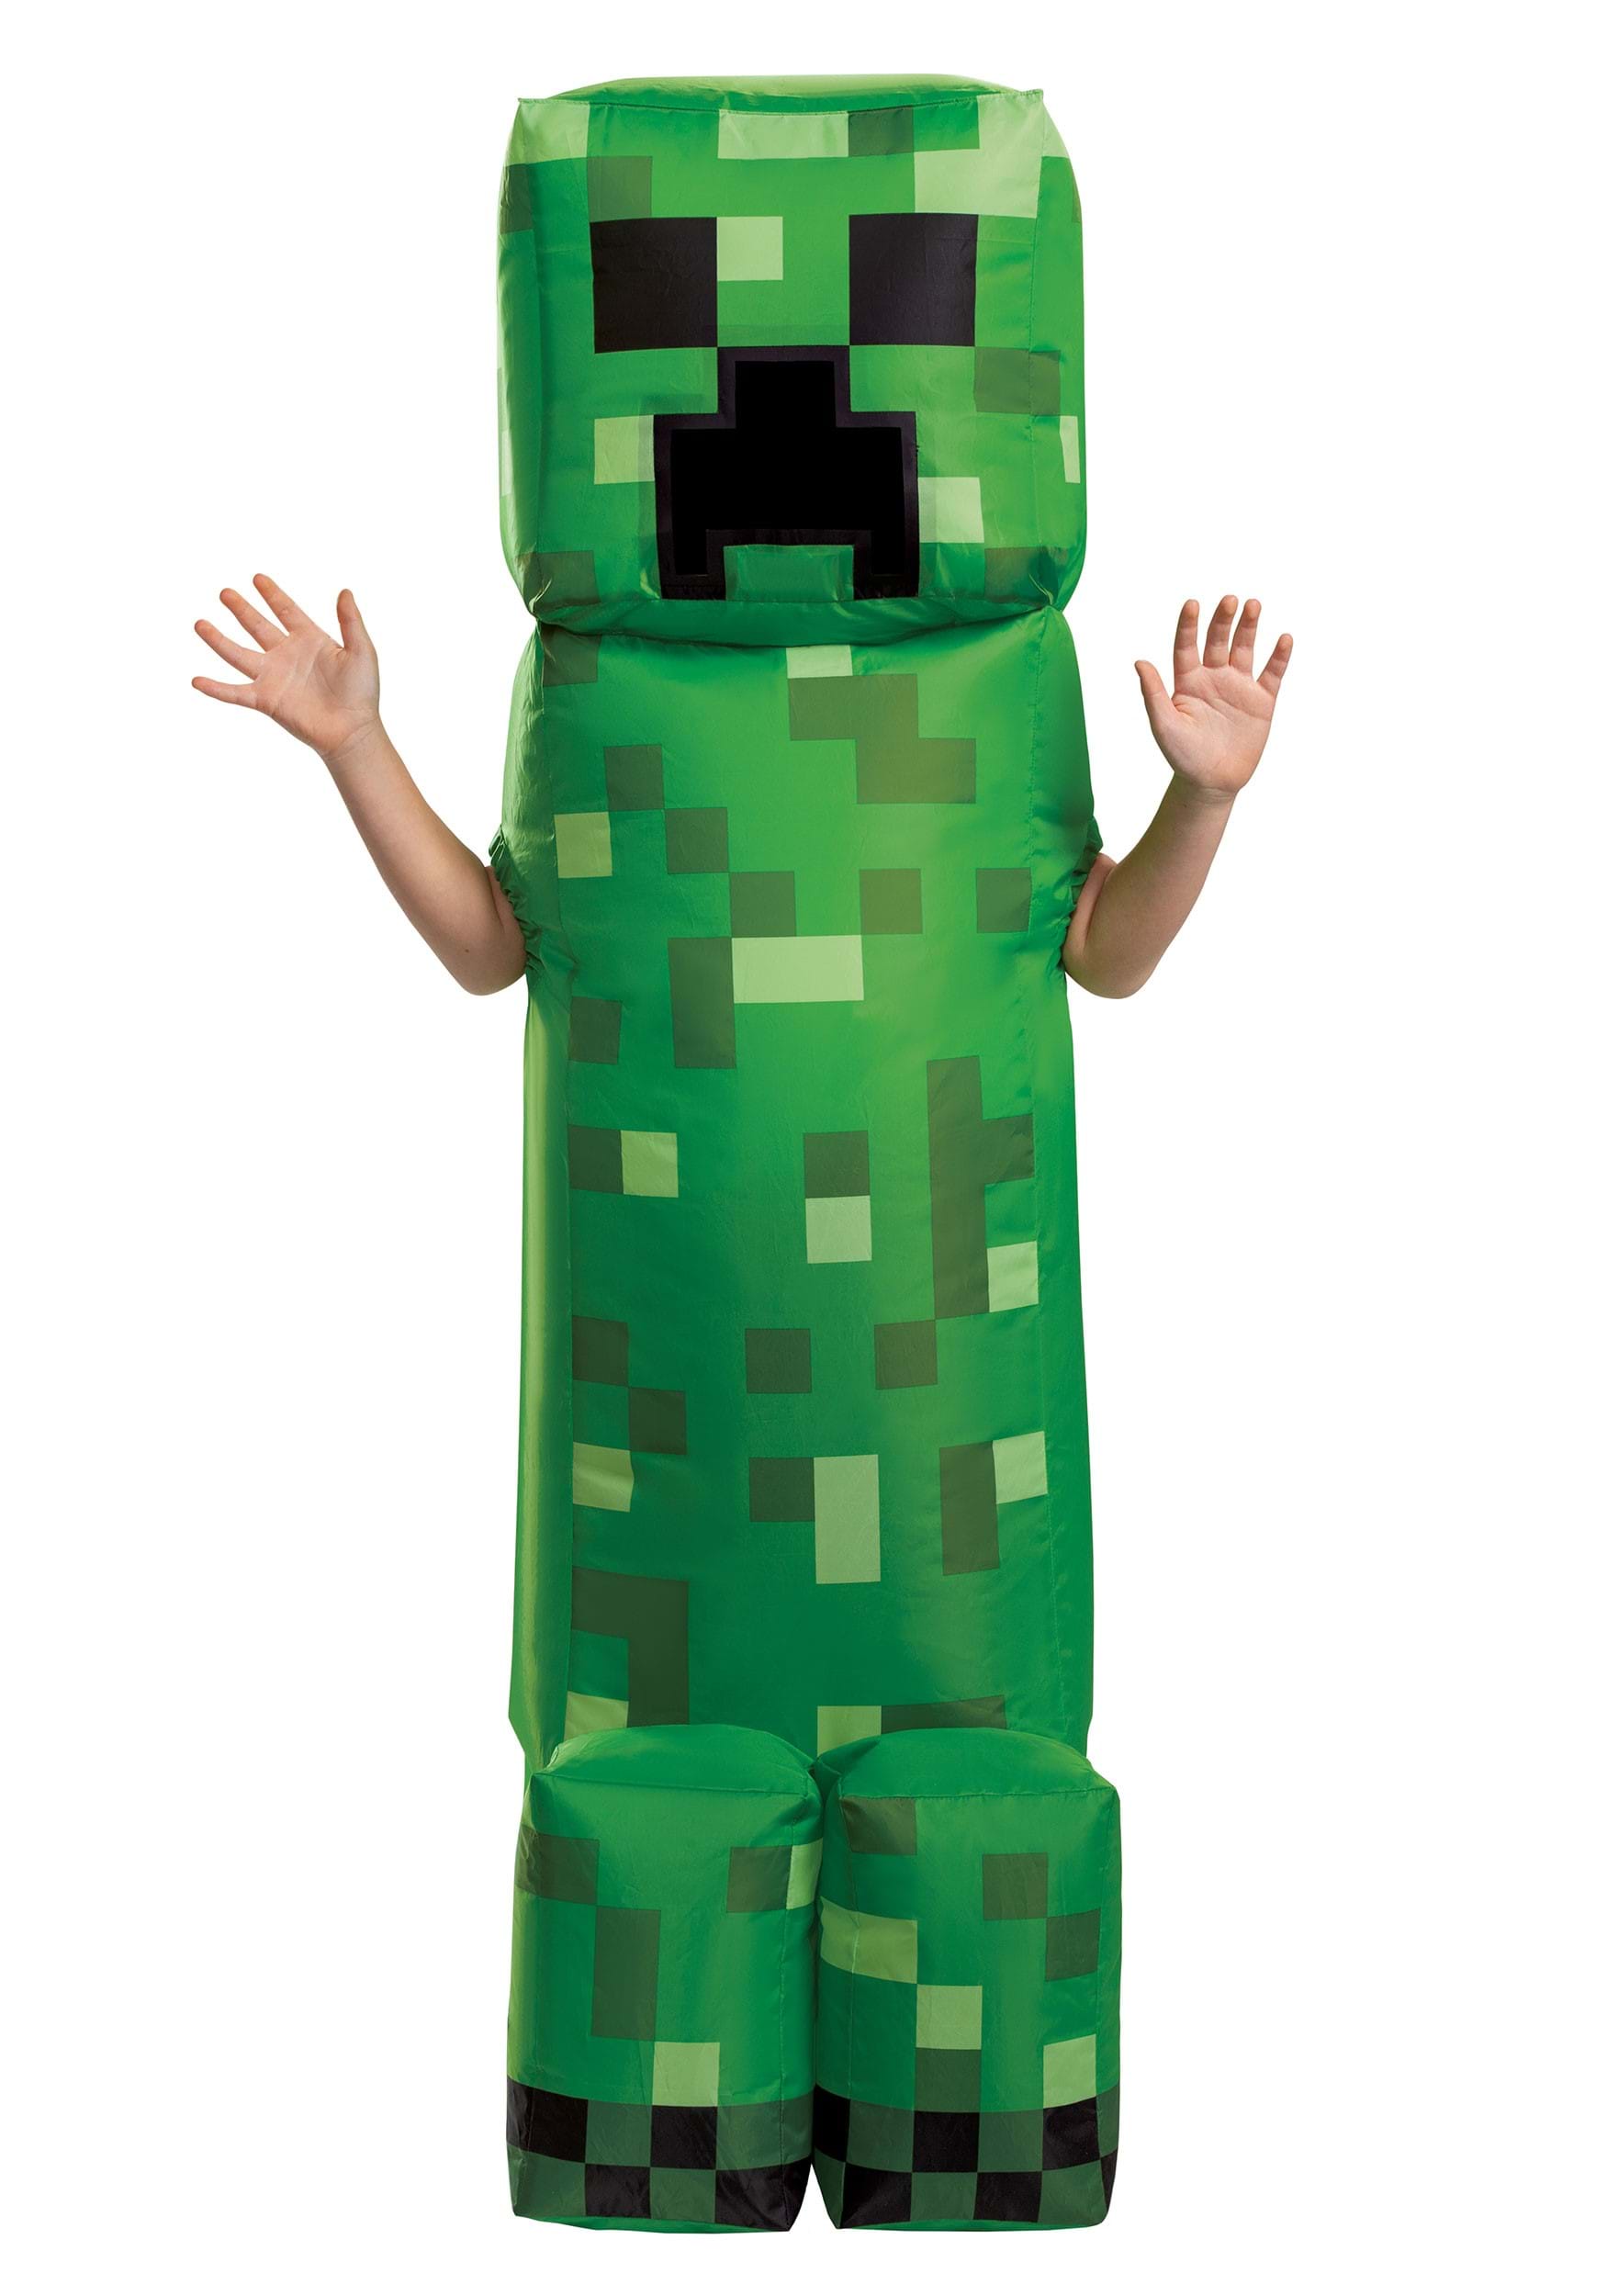 Kid's Inflatable Minecraft Creeper Costume